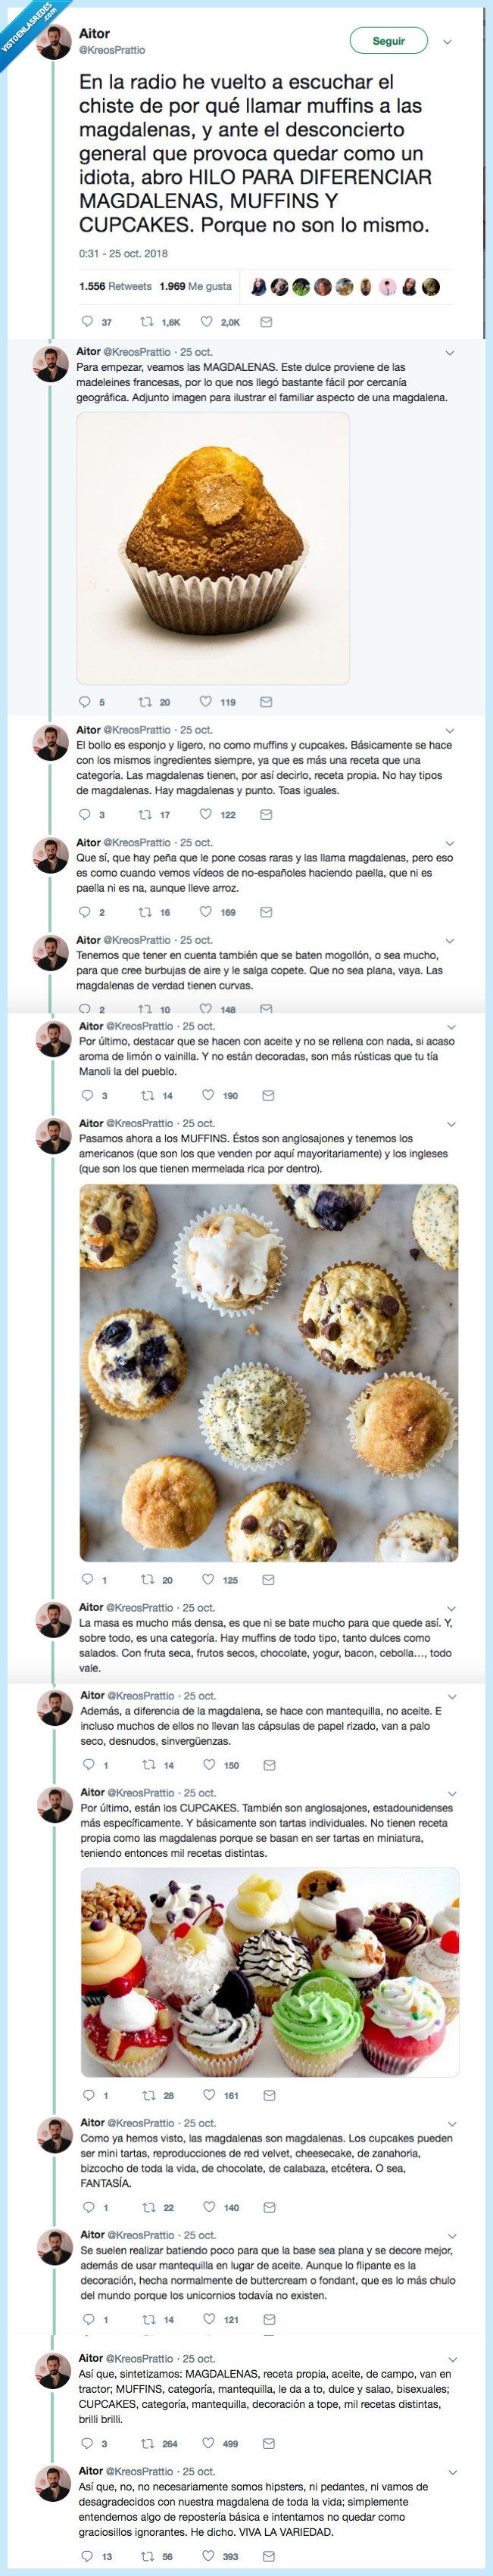 muffins,cupcakes,magdalenas,diferencia